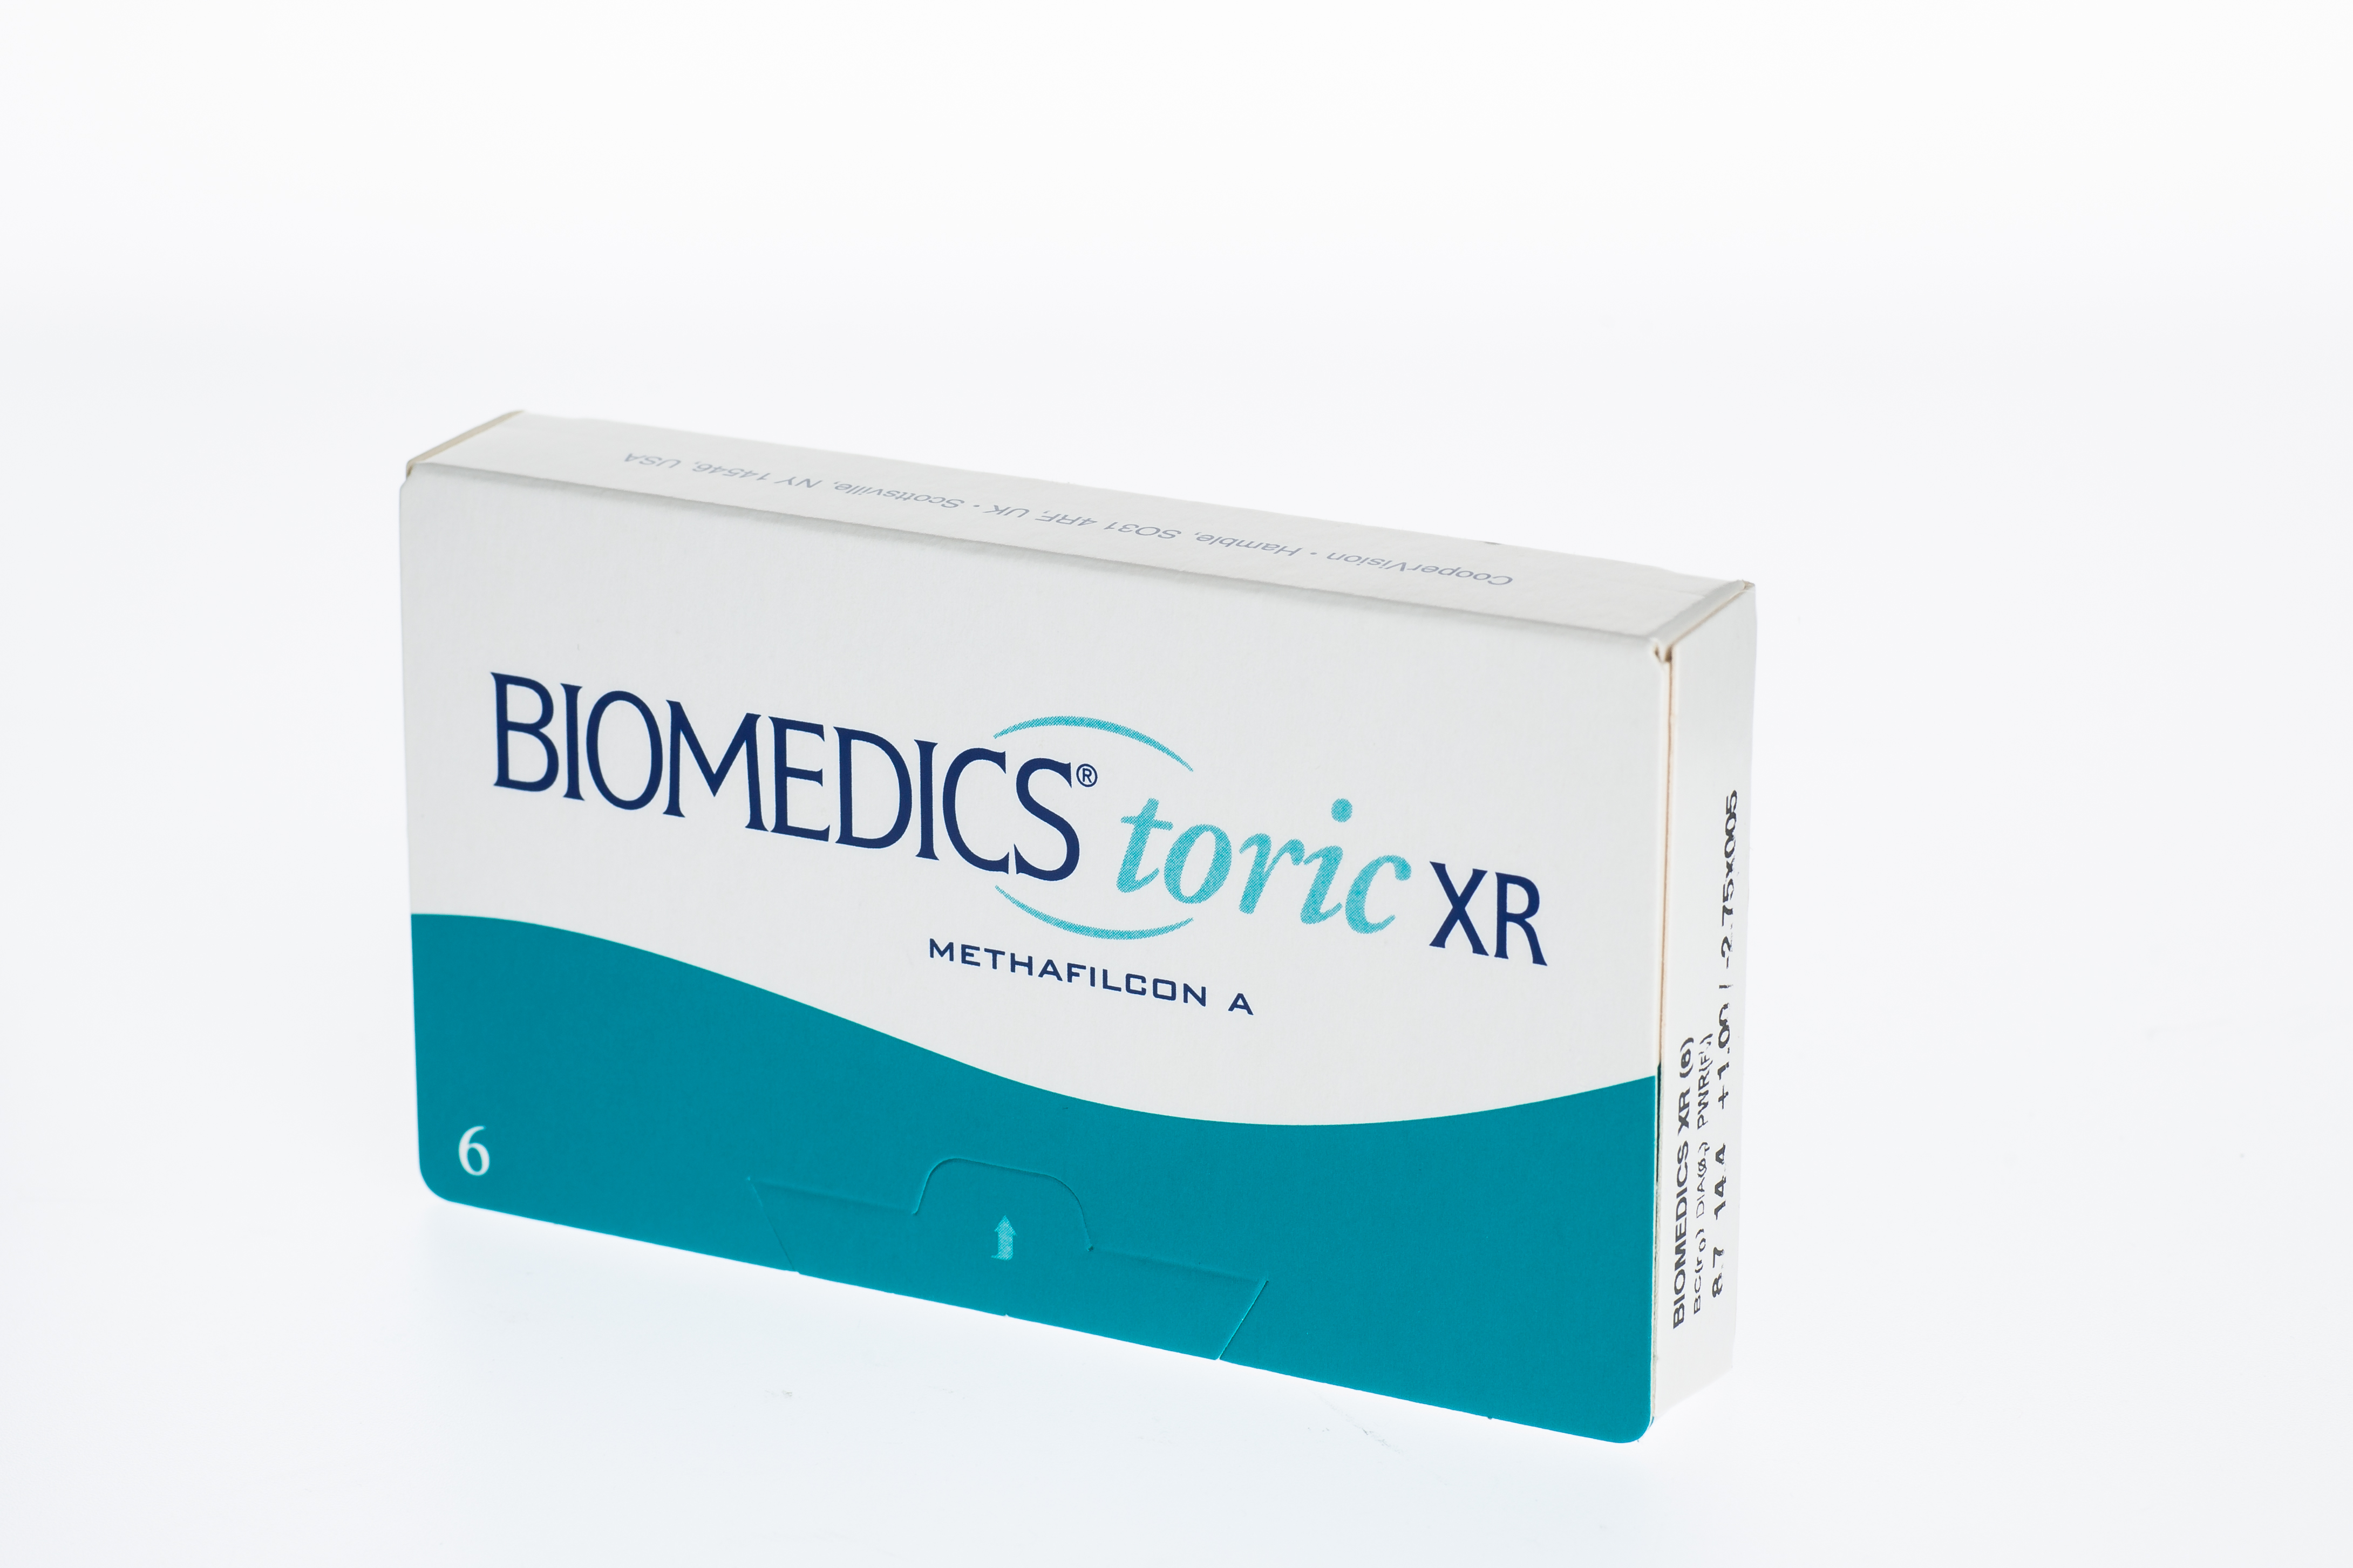 Biomedics toric XR - 6er Box